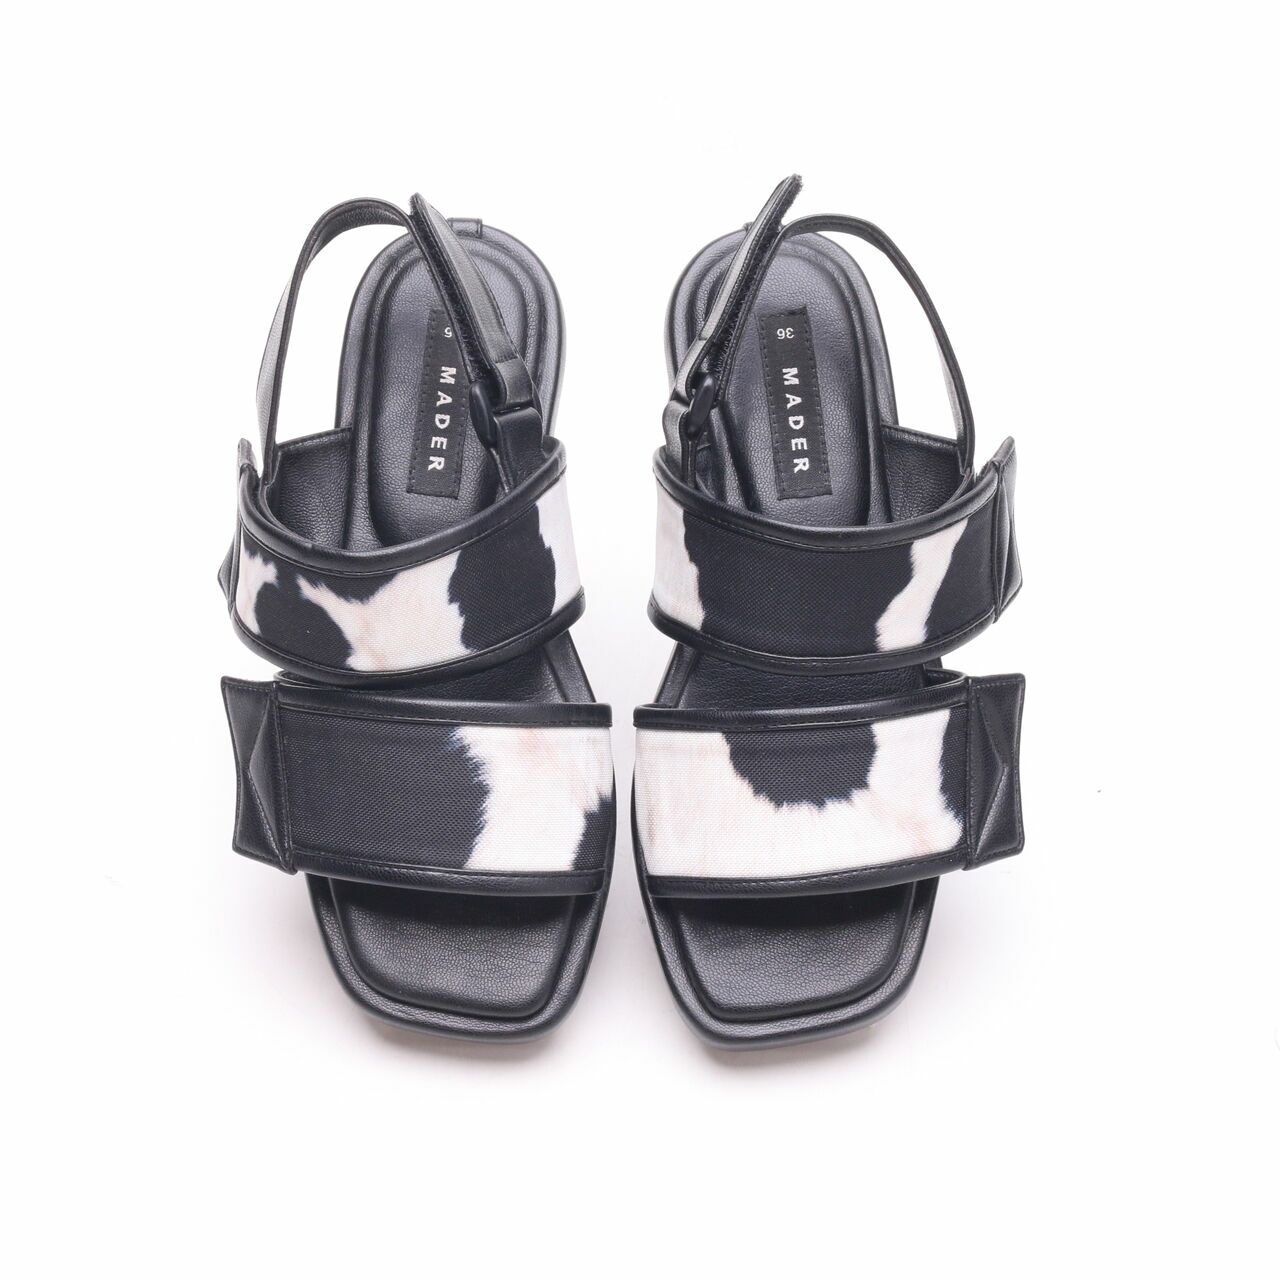 Mader Black Strap Sandals